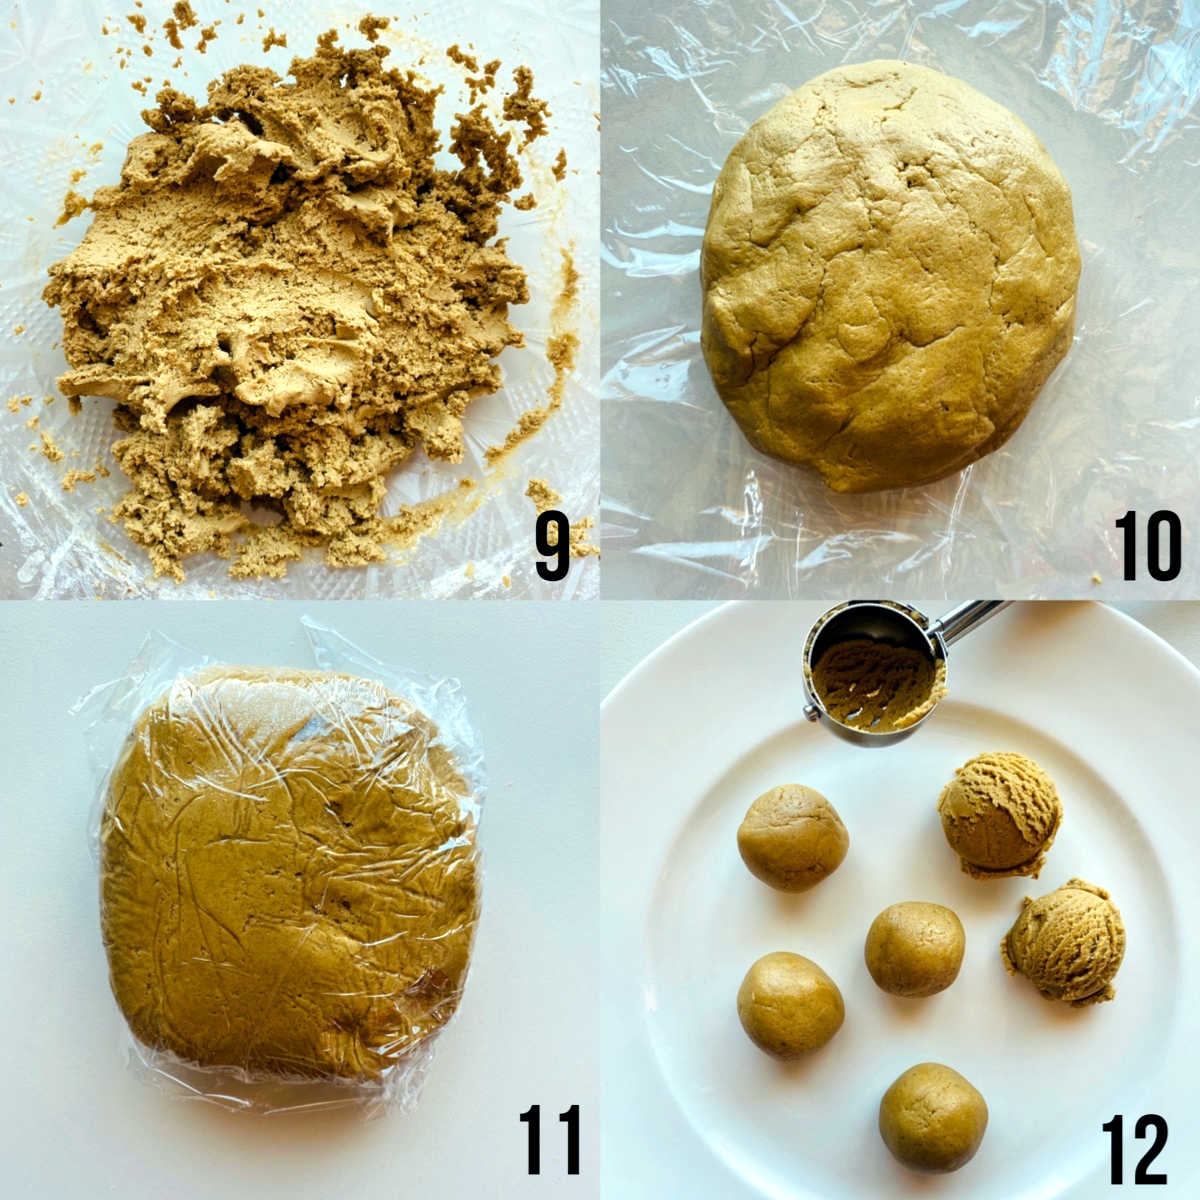 gingerbread process shots 9-12